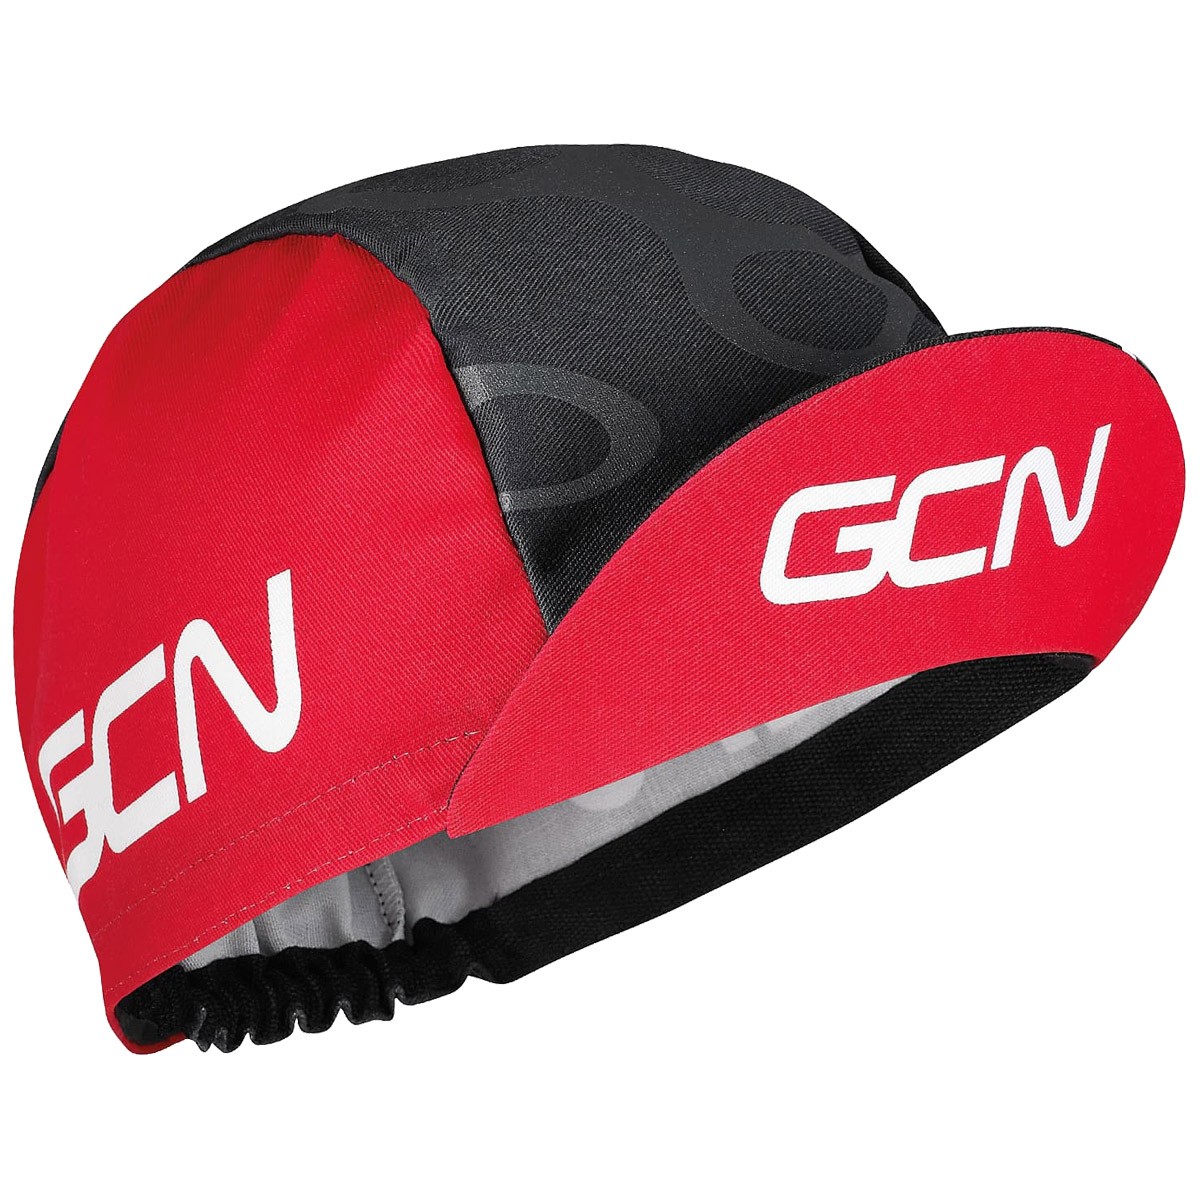 Assos GCN pro team casquette cycliste rouge noir gris